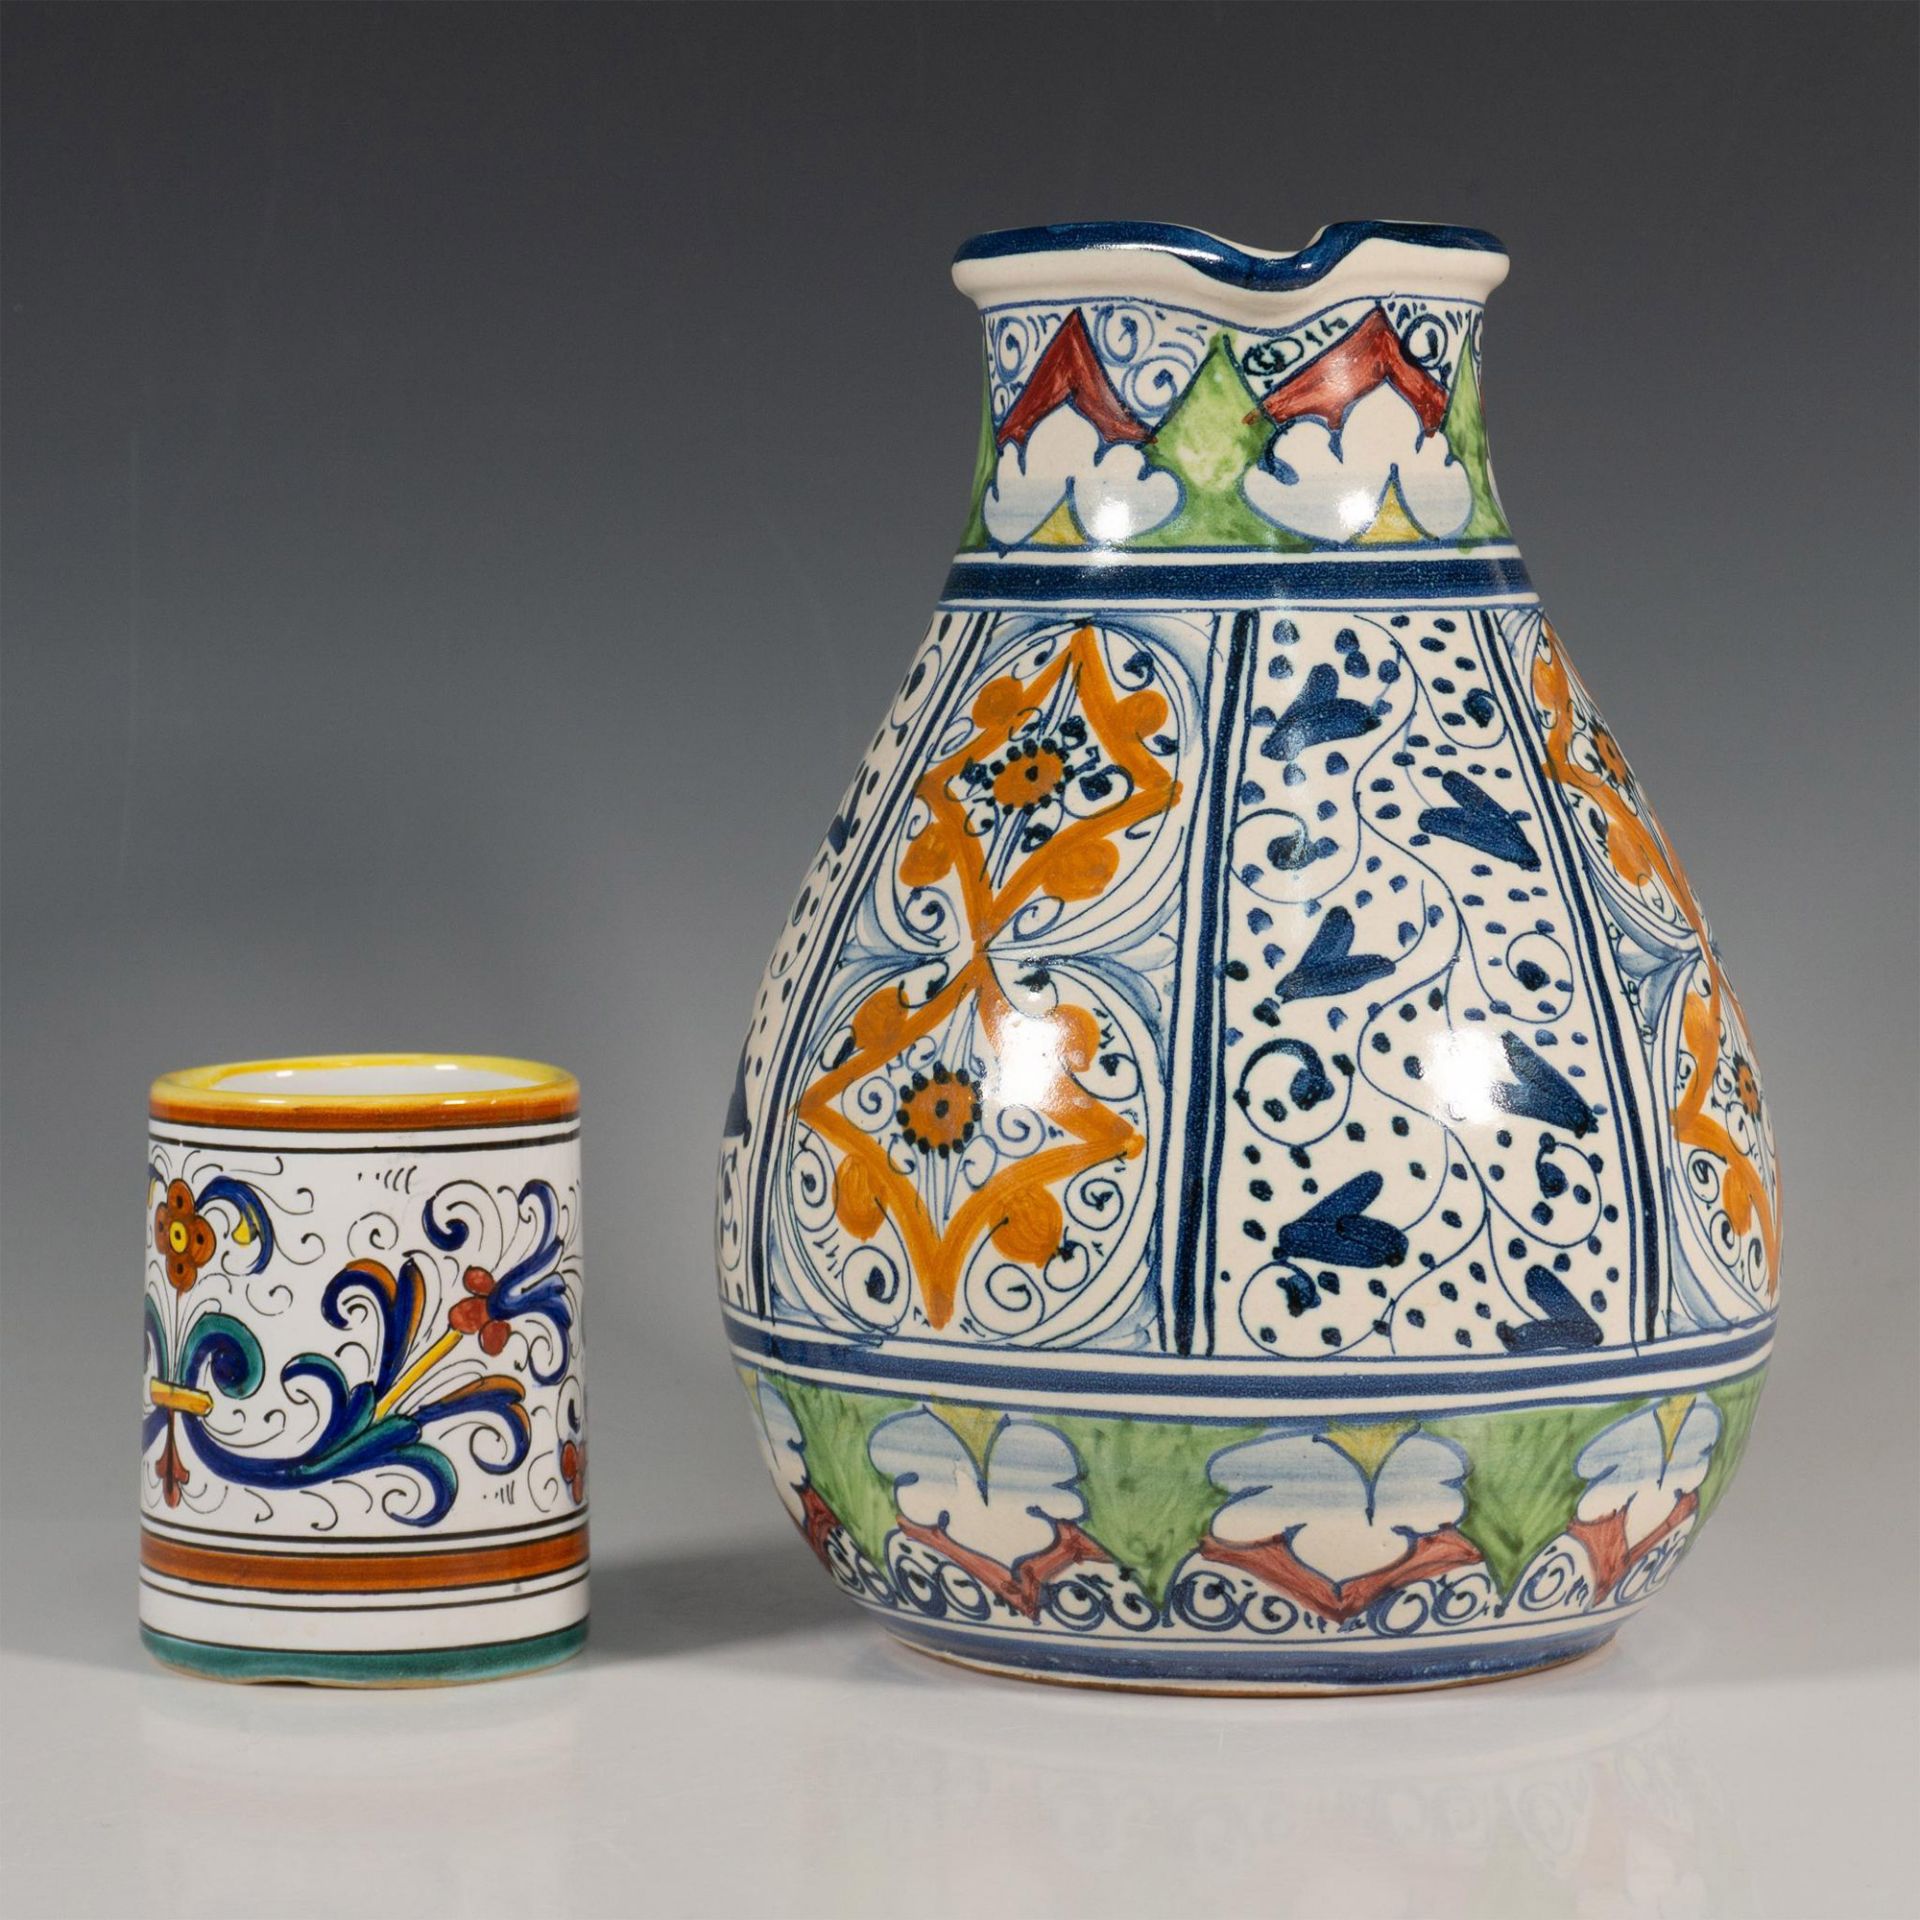 Original Hand-Painted Ceramic Carafe & S. Gimignano Tumbler - Bild 3 aus 5